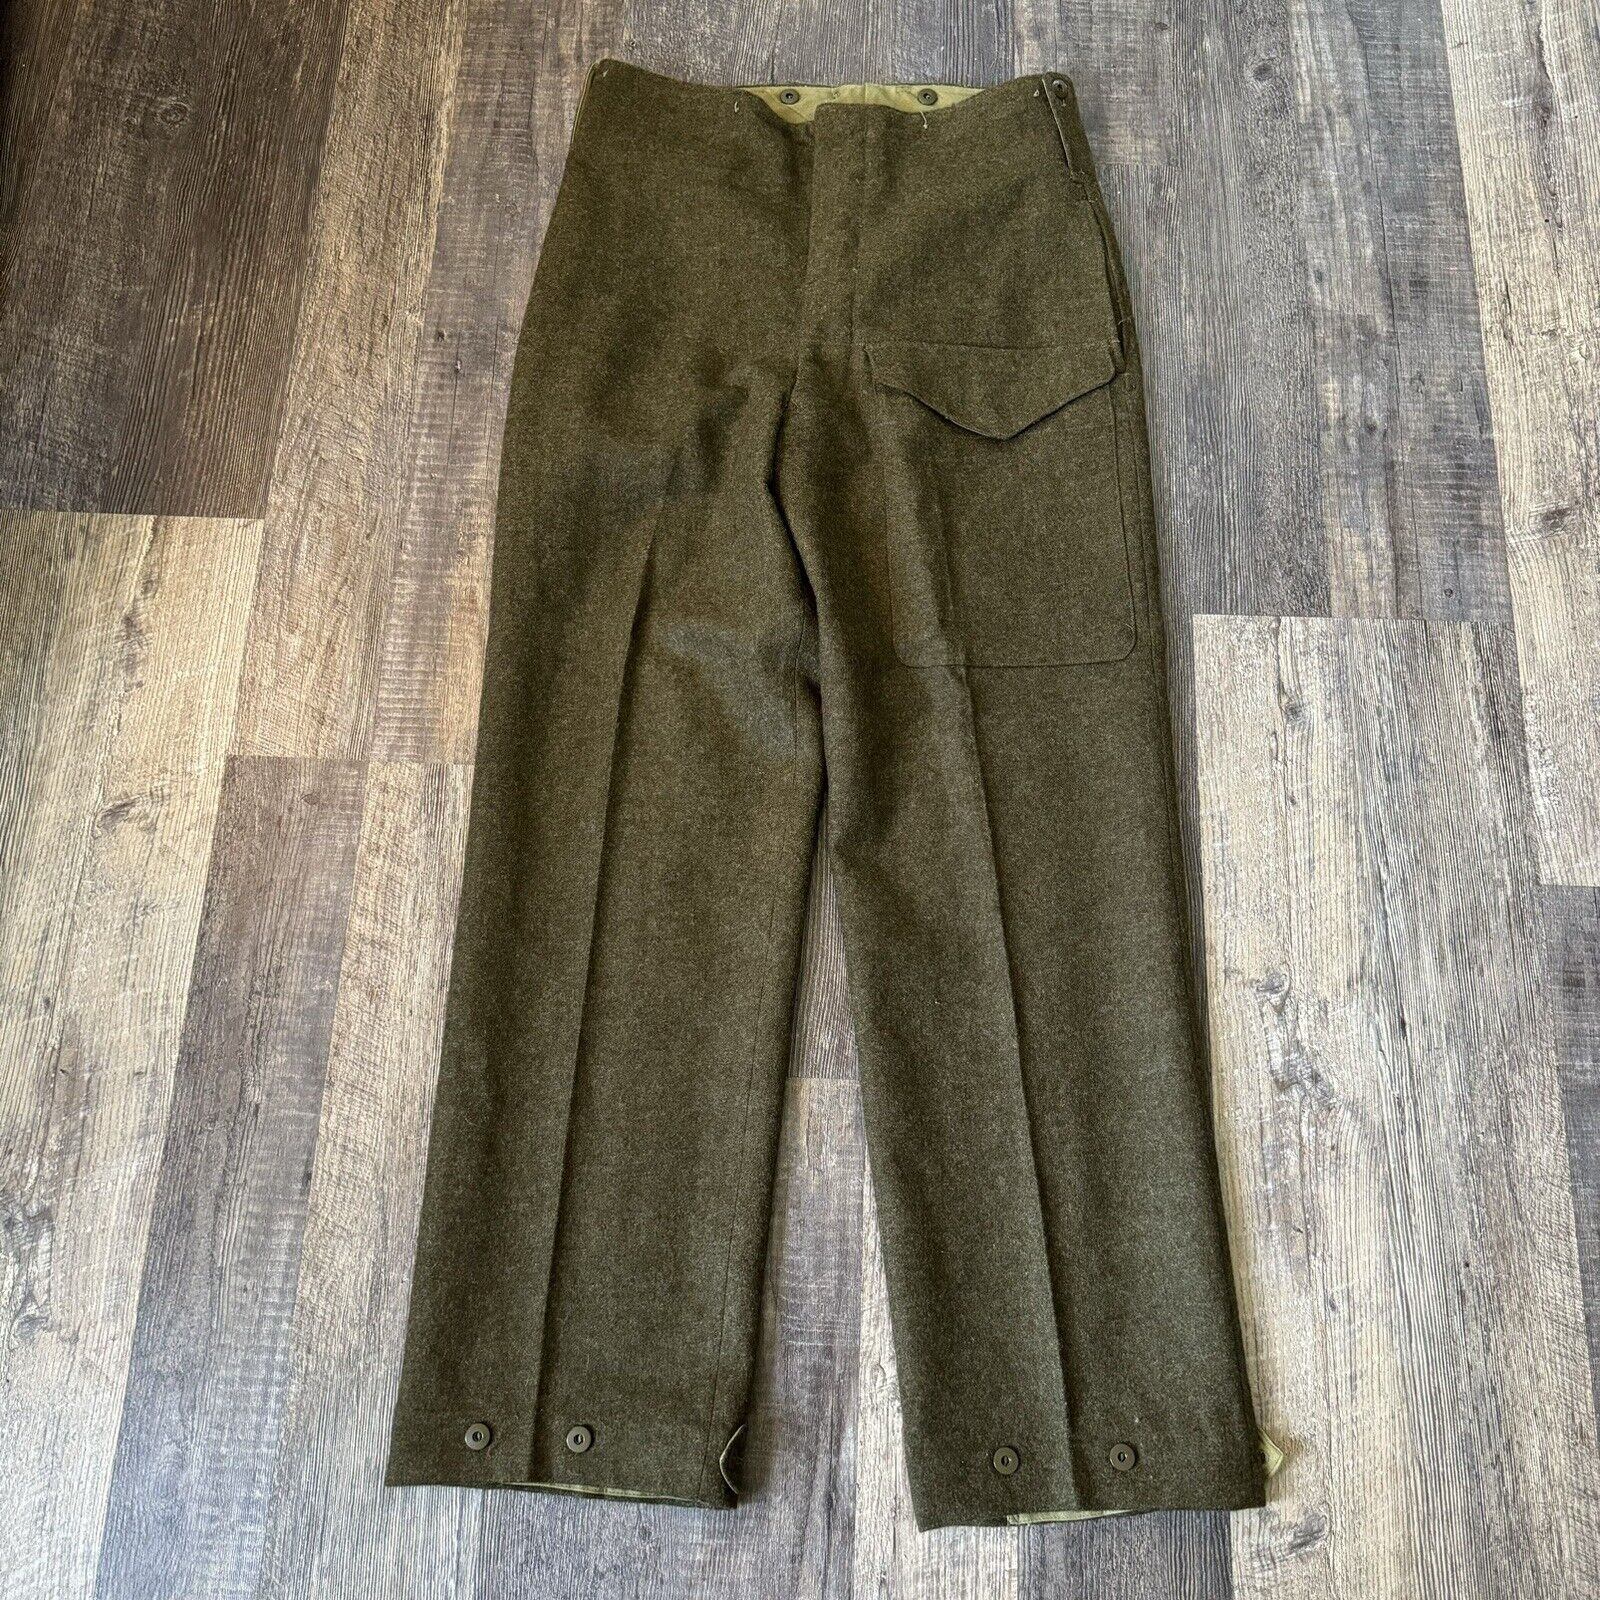 Vintage 1951 Battledress Wool Trousers Size 32”